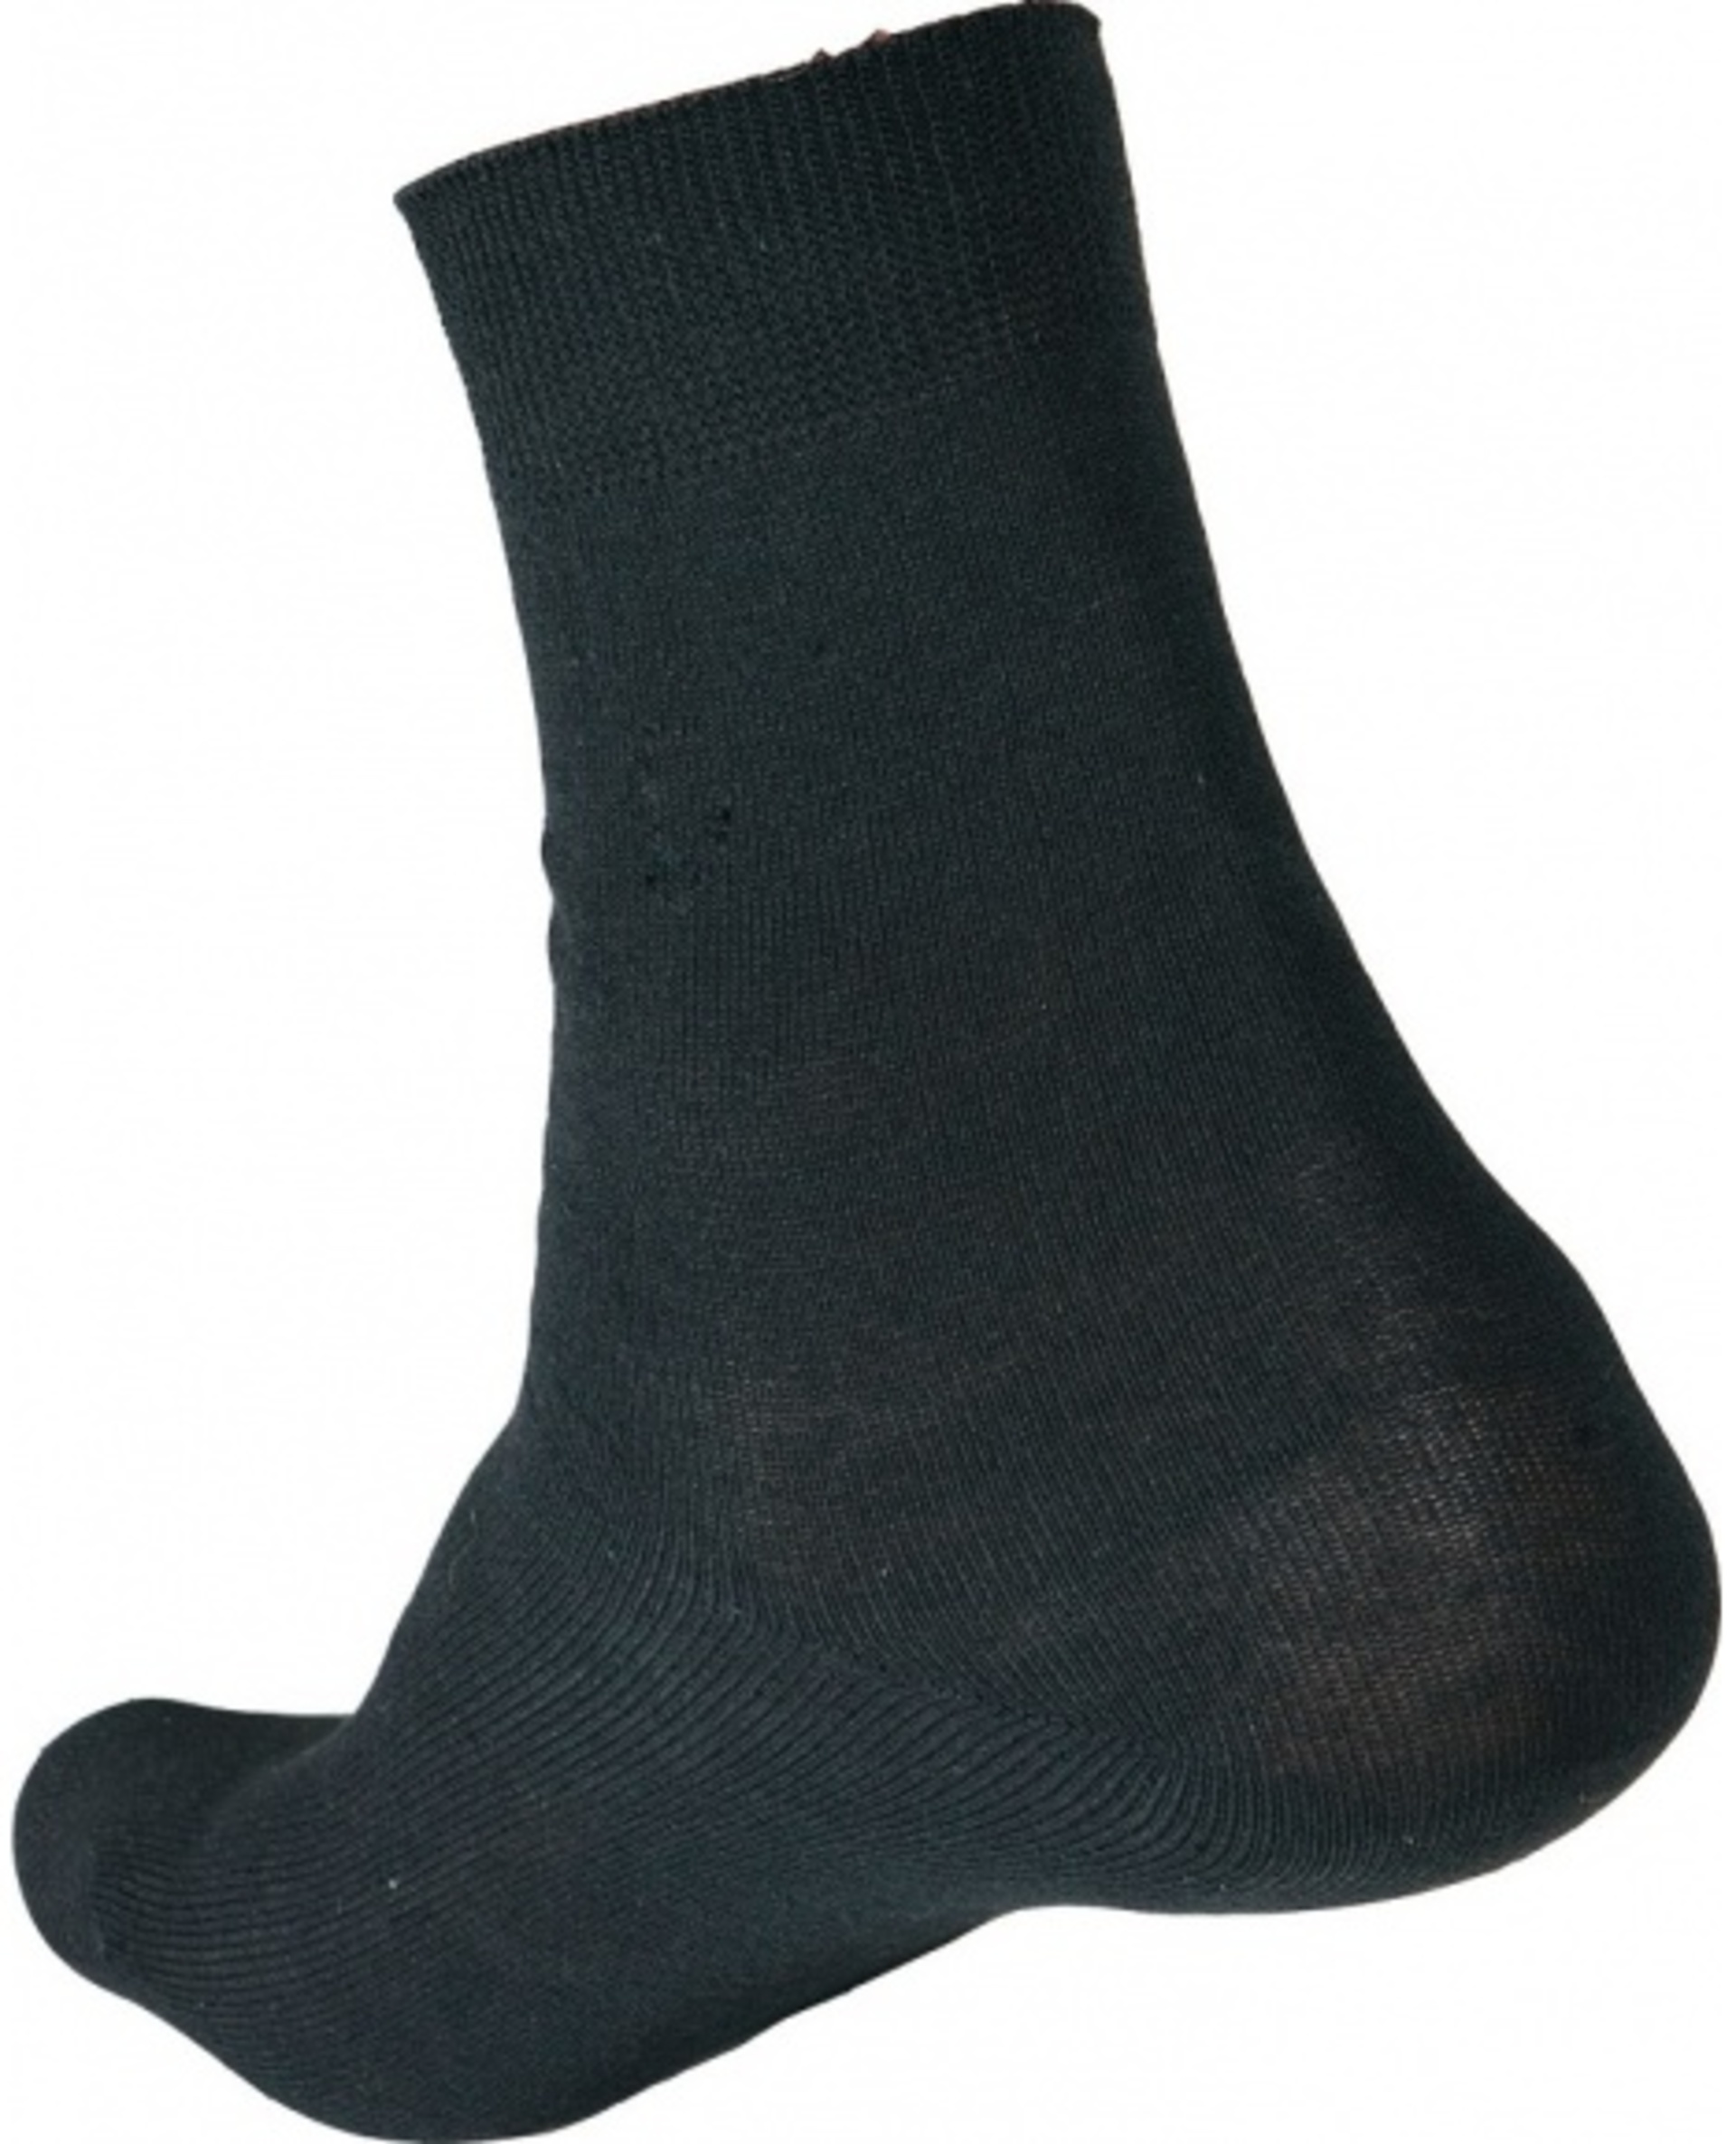 Ponožky CRV MERGE 43